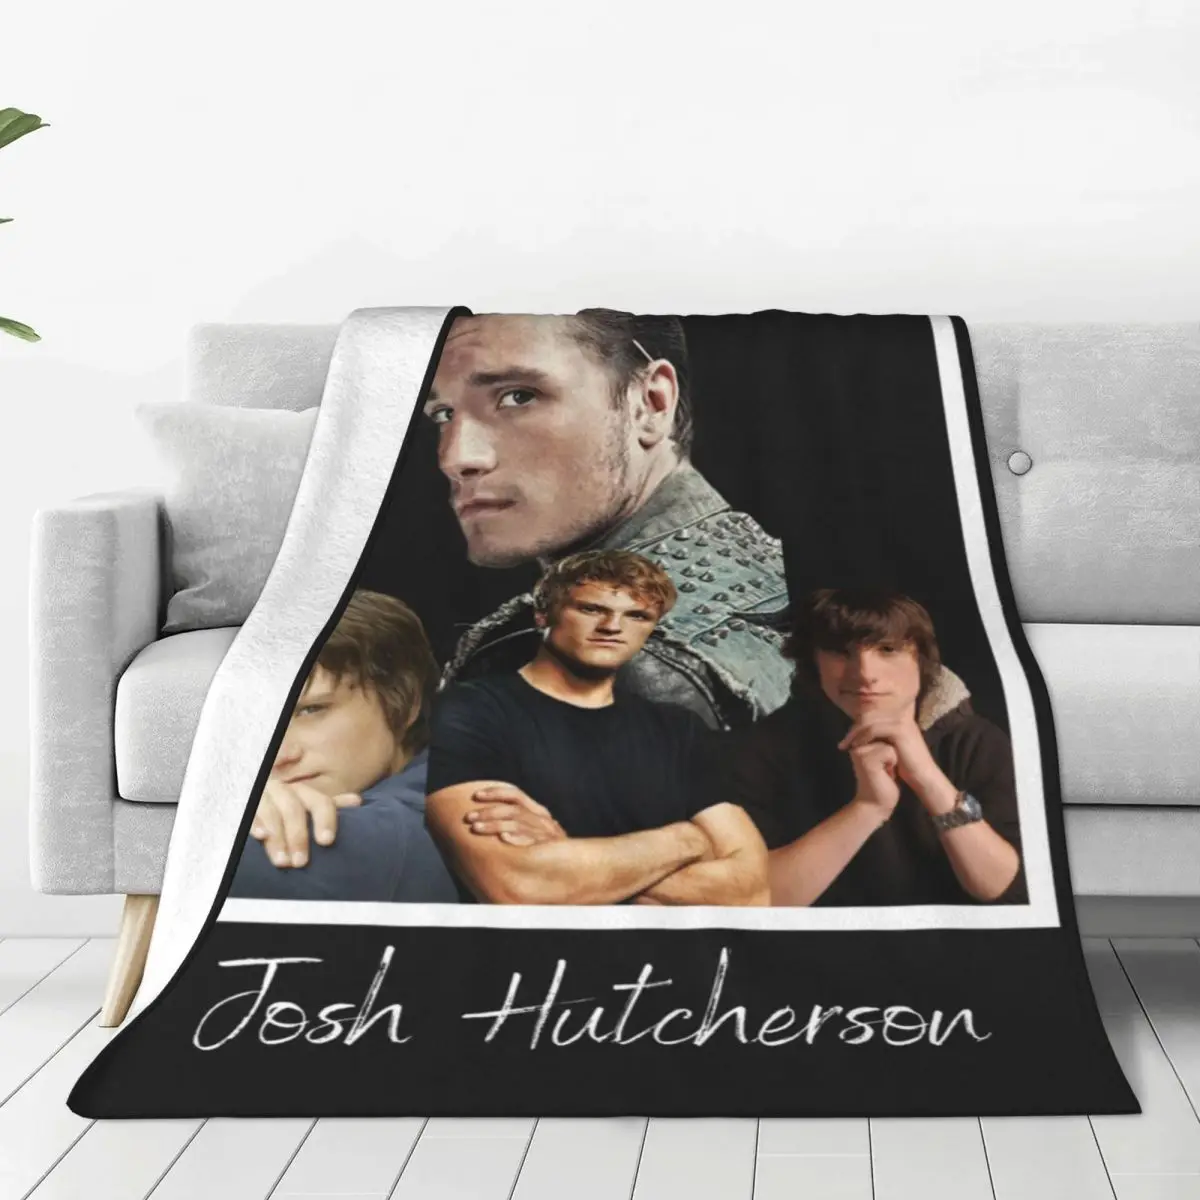 

Фланелевое Одеяло J-Jim Hutchersons, качественное теплое мягкое постельное белье, зимнее освещение для кемпинга в спальне